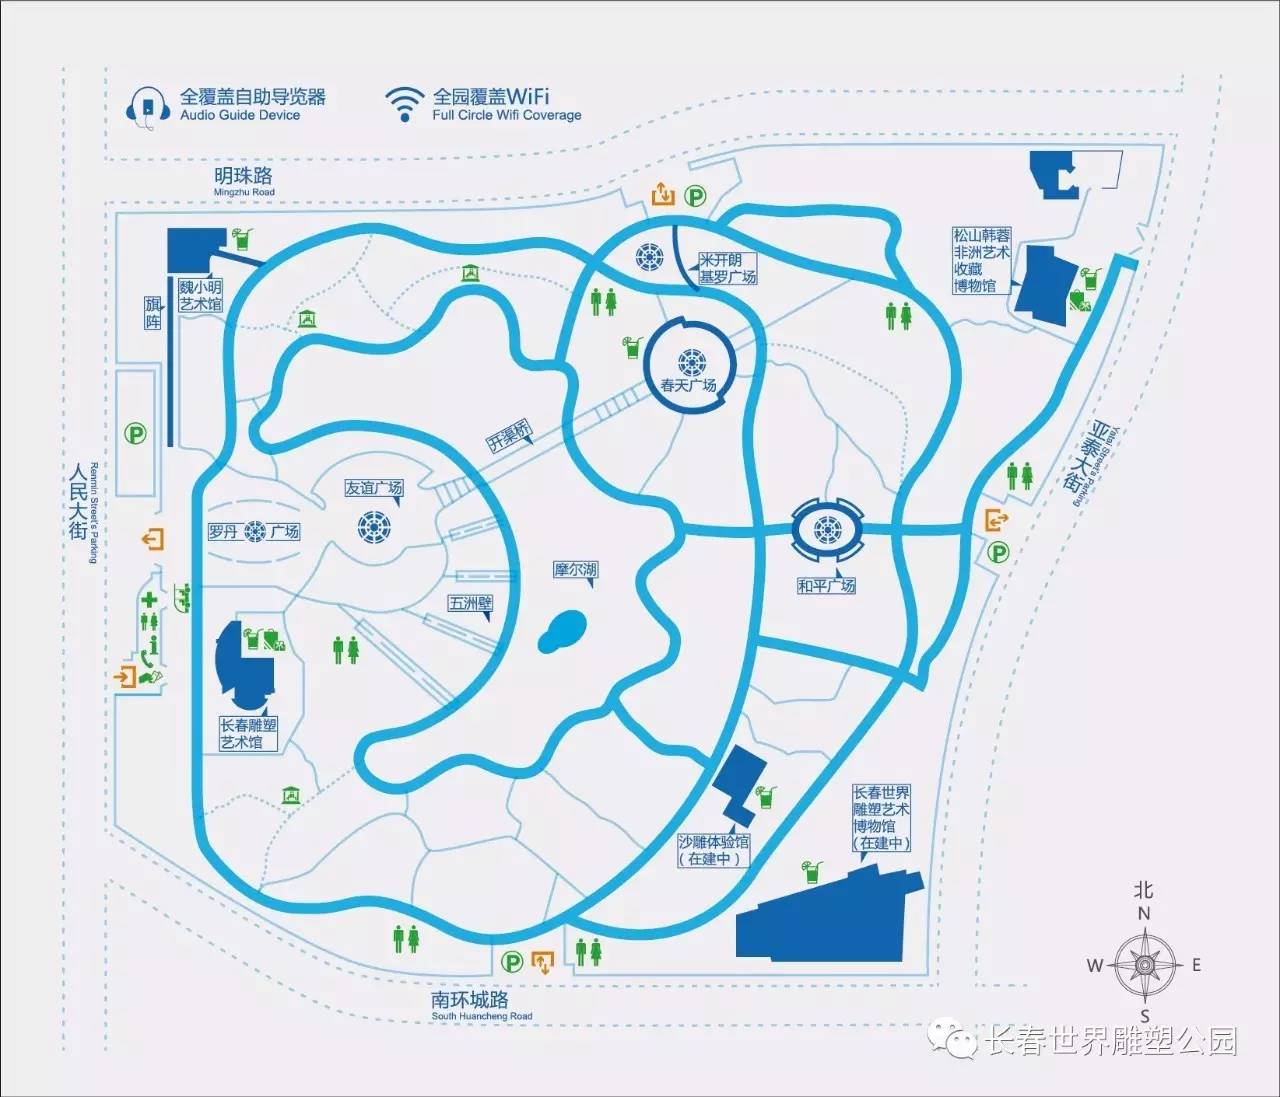 北京国际雕塑公园地图图片